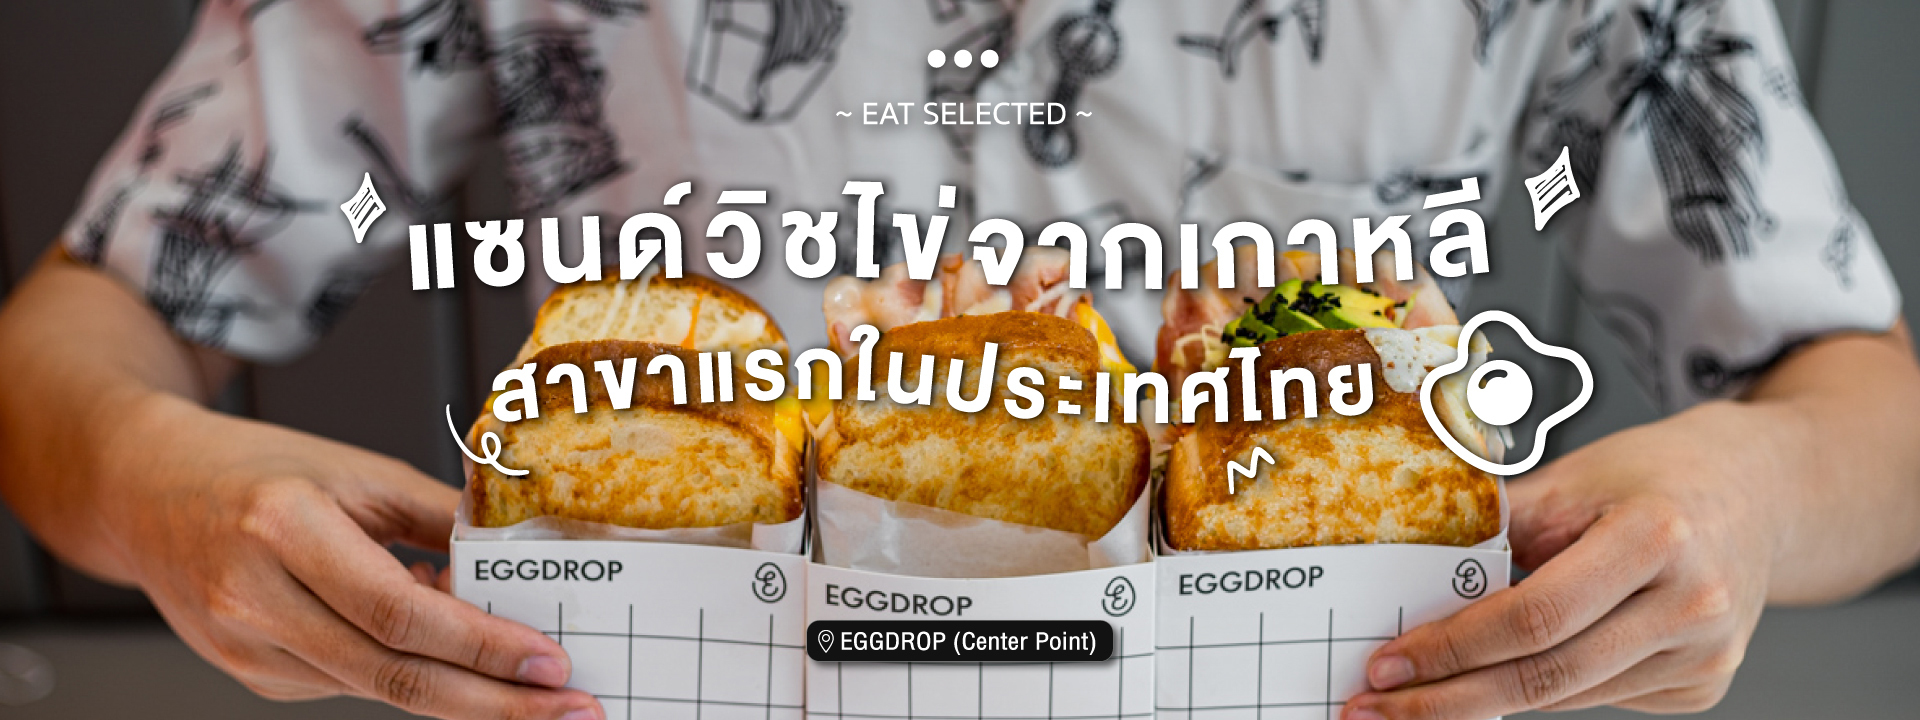 สาขาแรกในประเทศไทย แซนด์วิชไข่จากเกาหลี EGGDROP